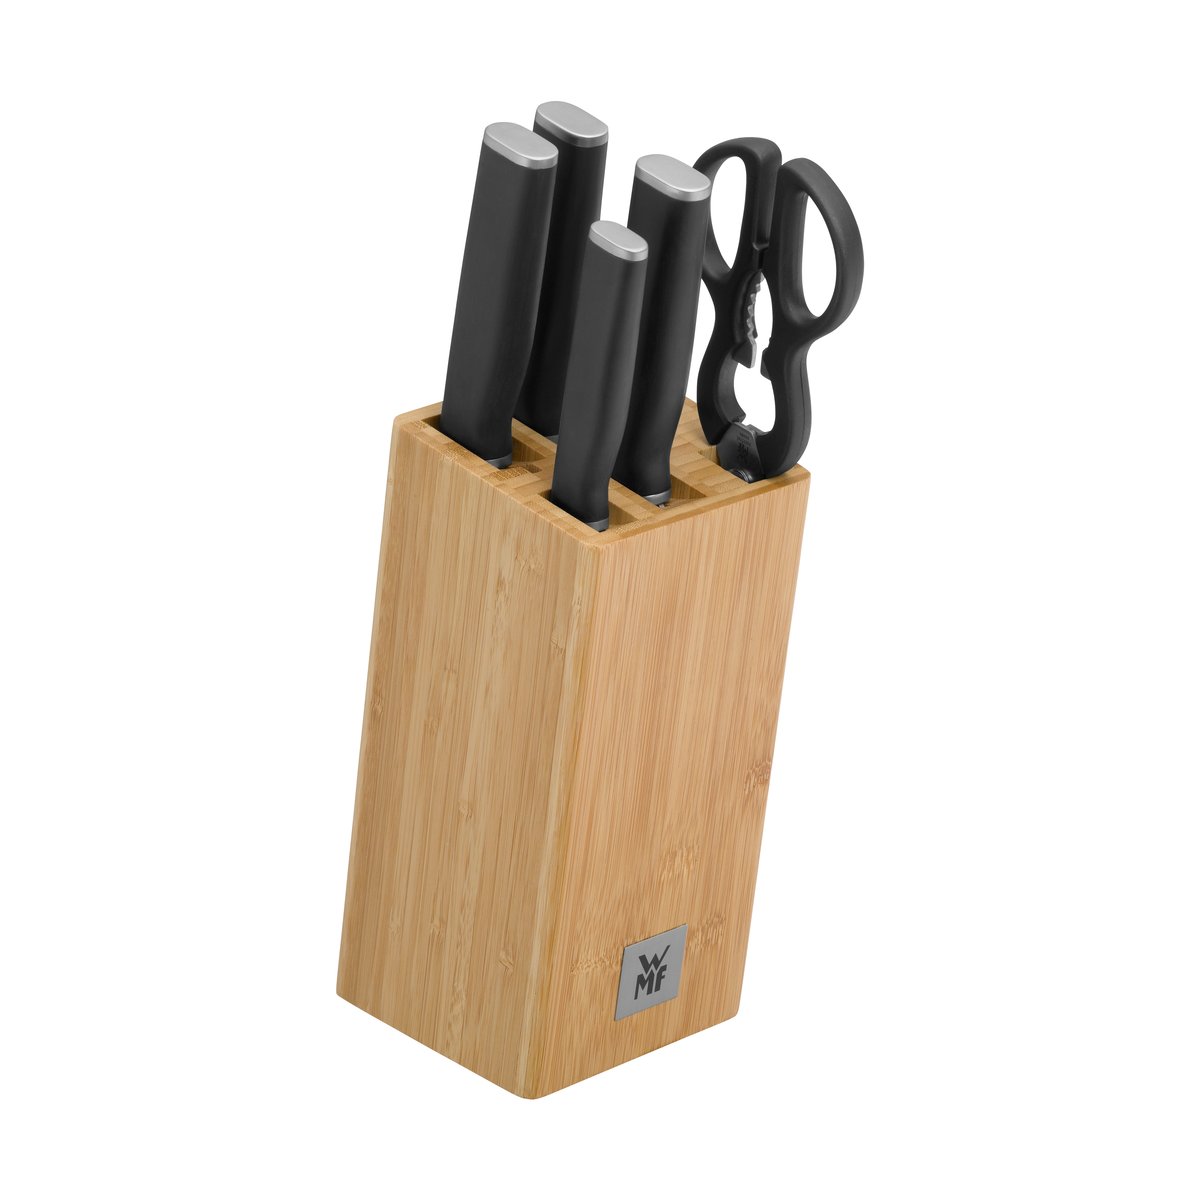 WMF Kineo knivblok med 4 knive og saks Rustfrit stål